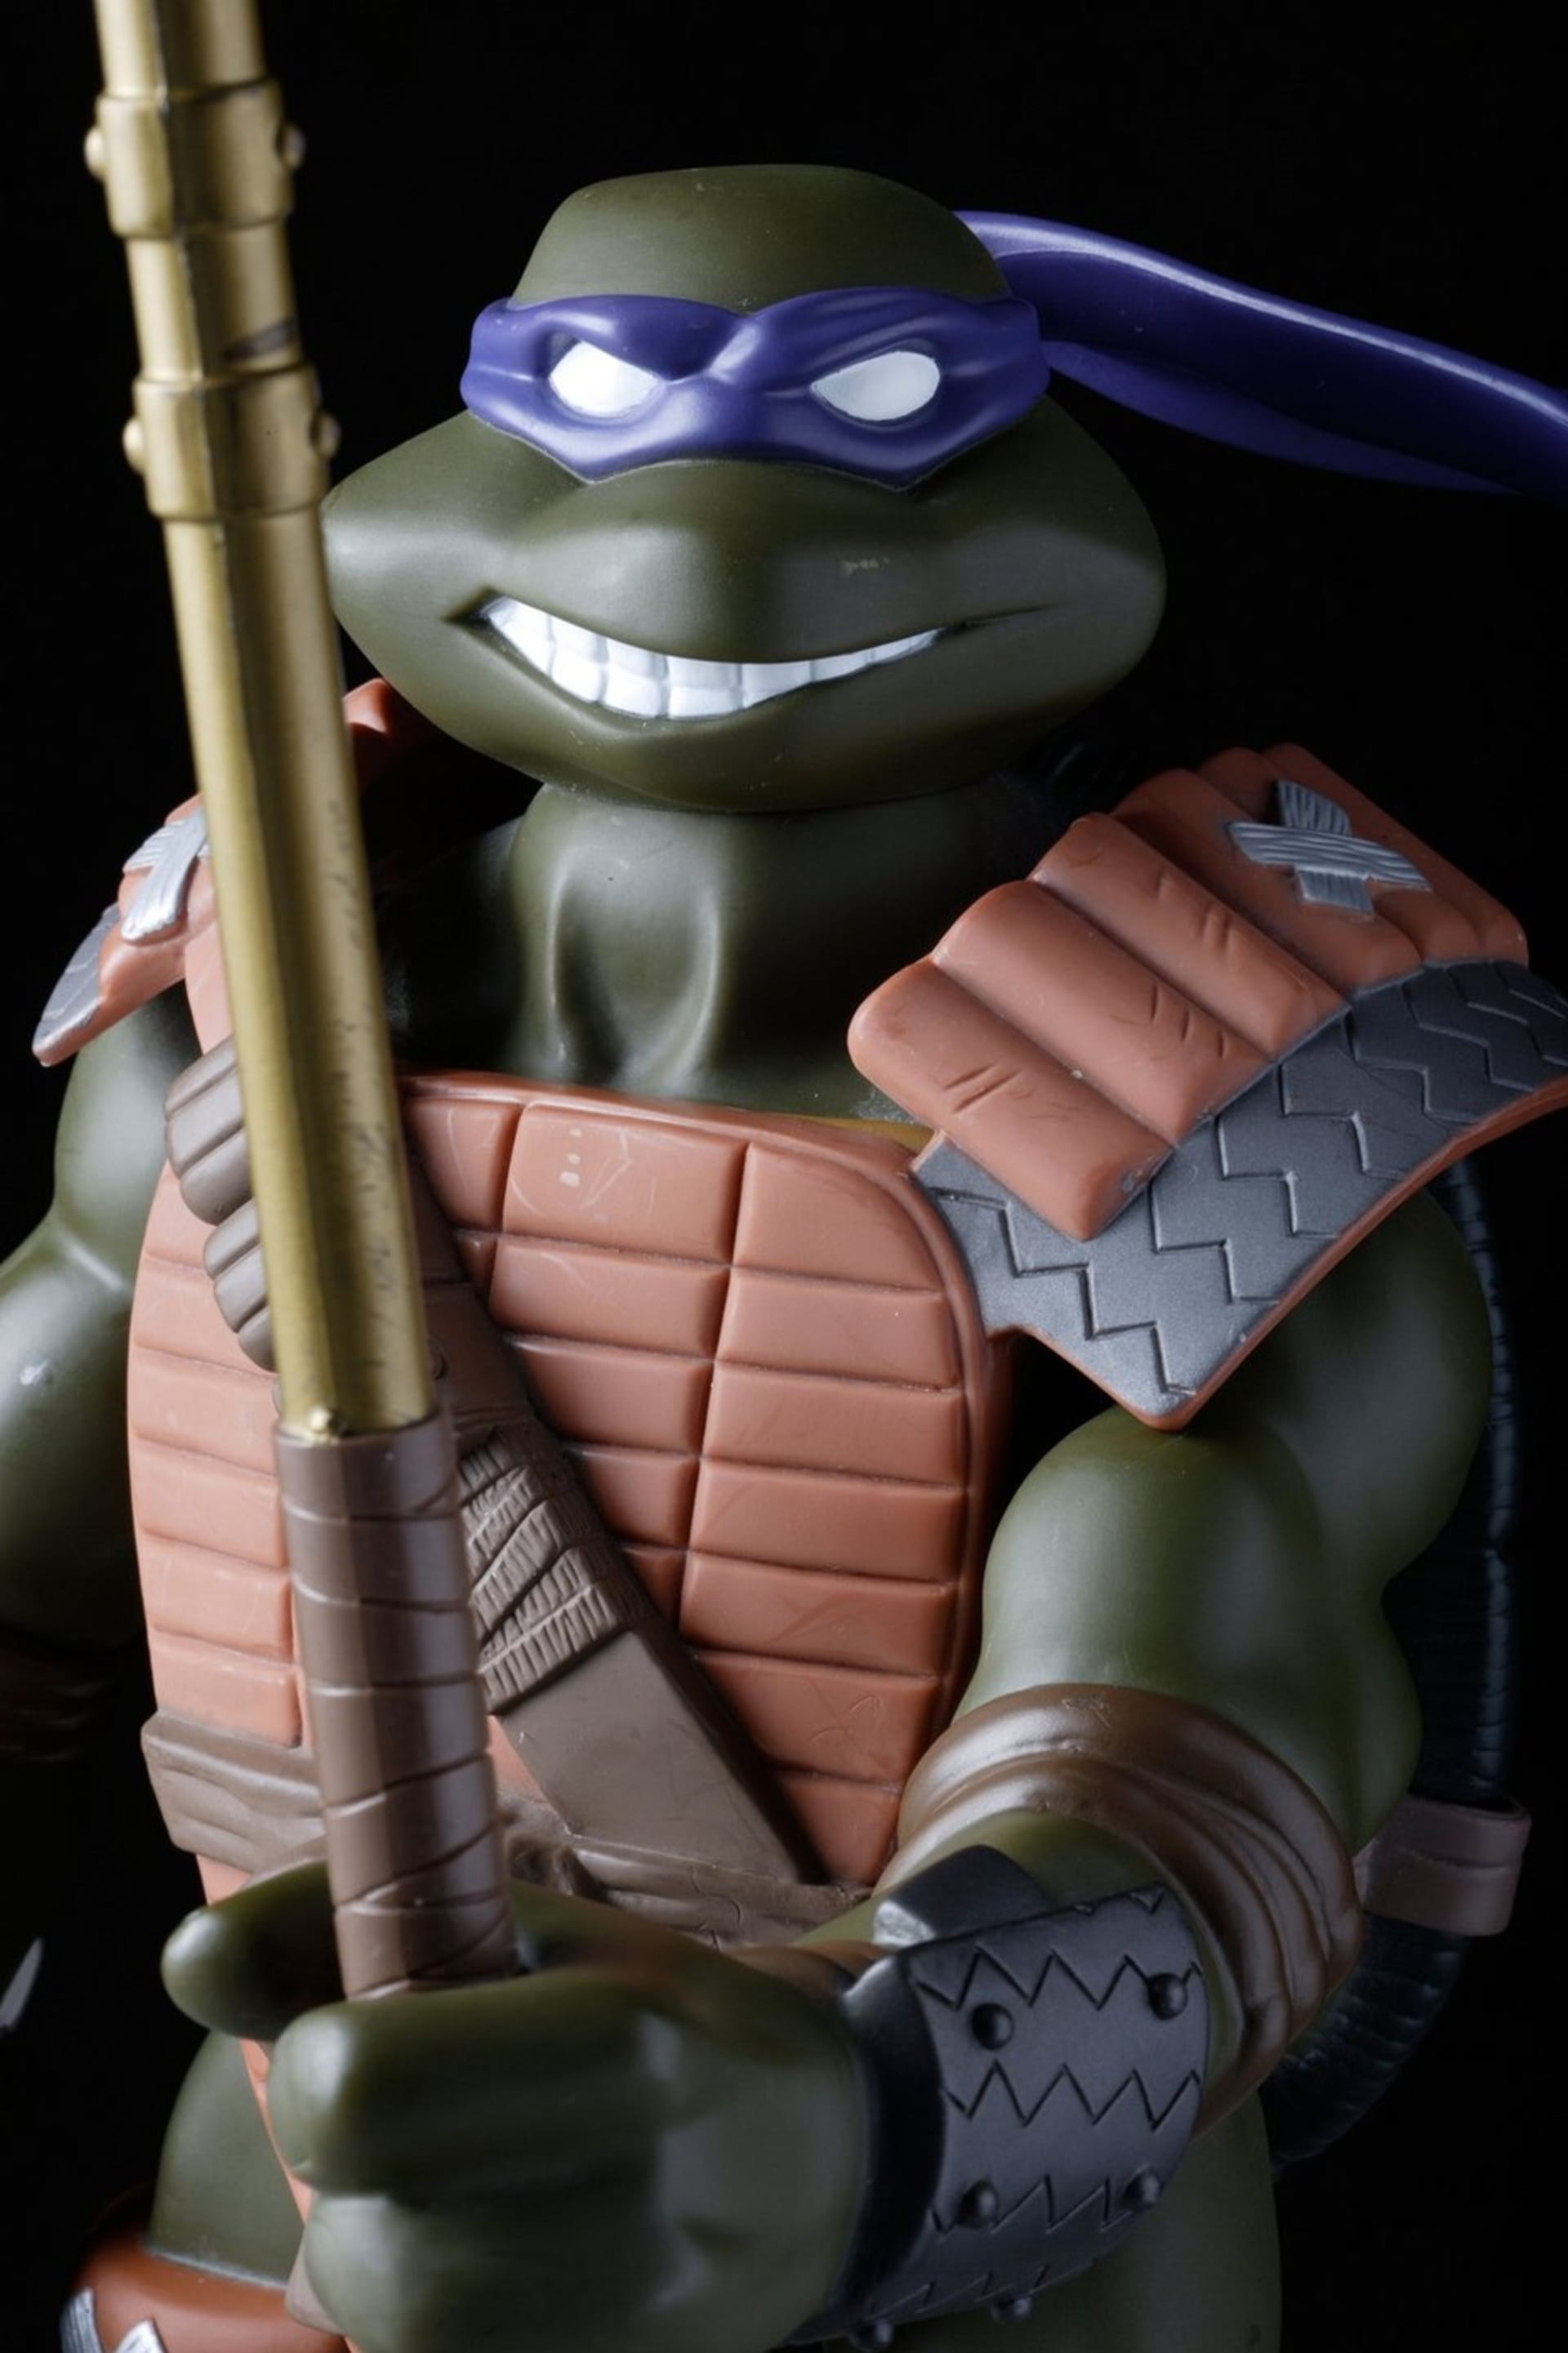 Hračky z devadesátek: Průměrná cena původních a bezvadných figurek Želvy Ninja se může na aukcích vyšplhat až na stovky tisíc korun. A to rozhodně není špatné za jednu akční figurku!